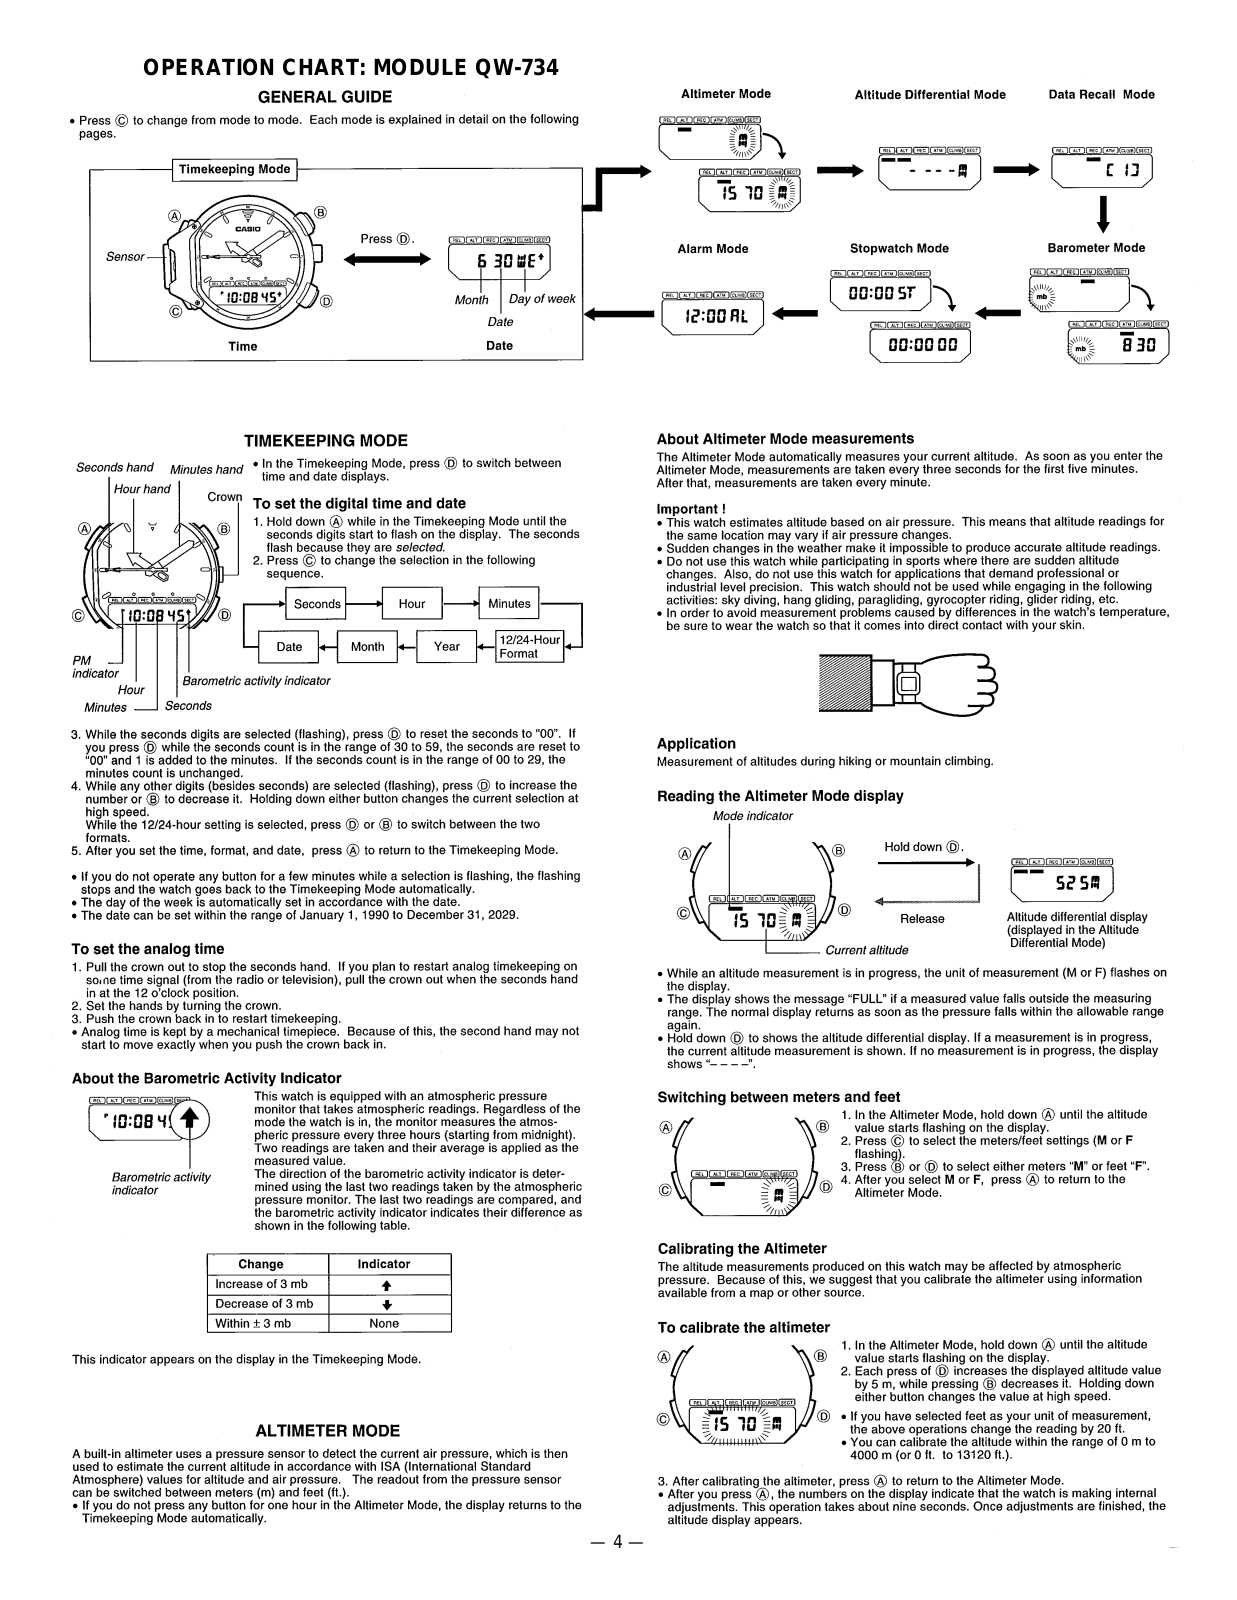 Casio 734 Owner's Manual